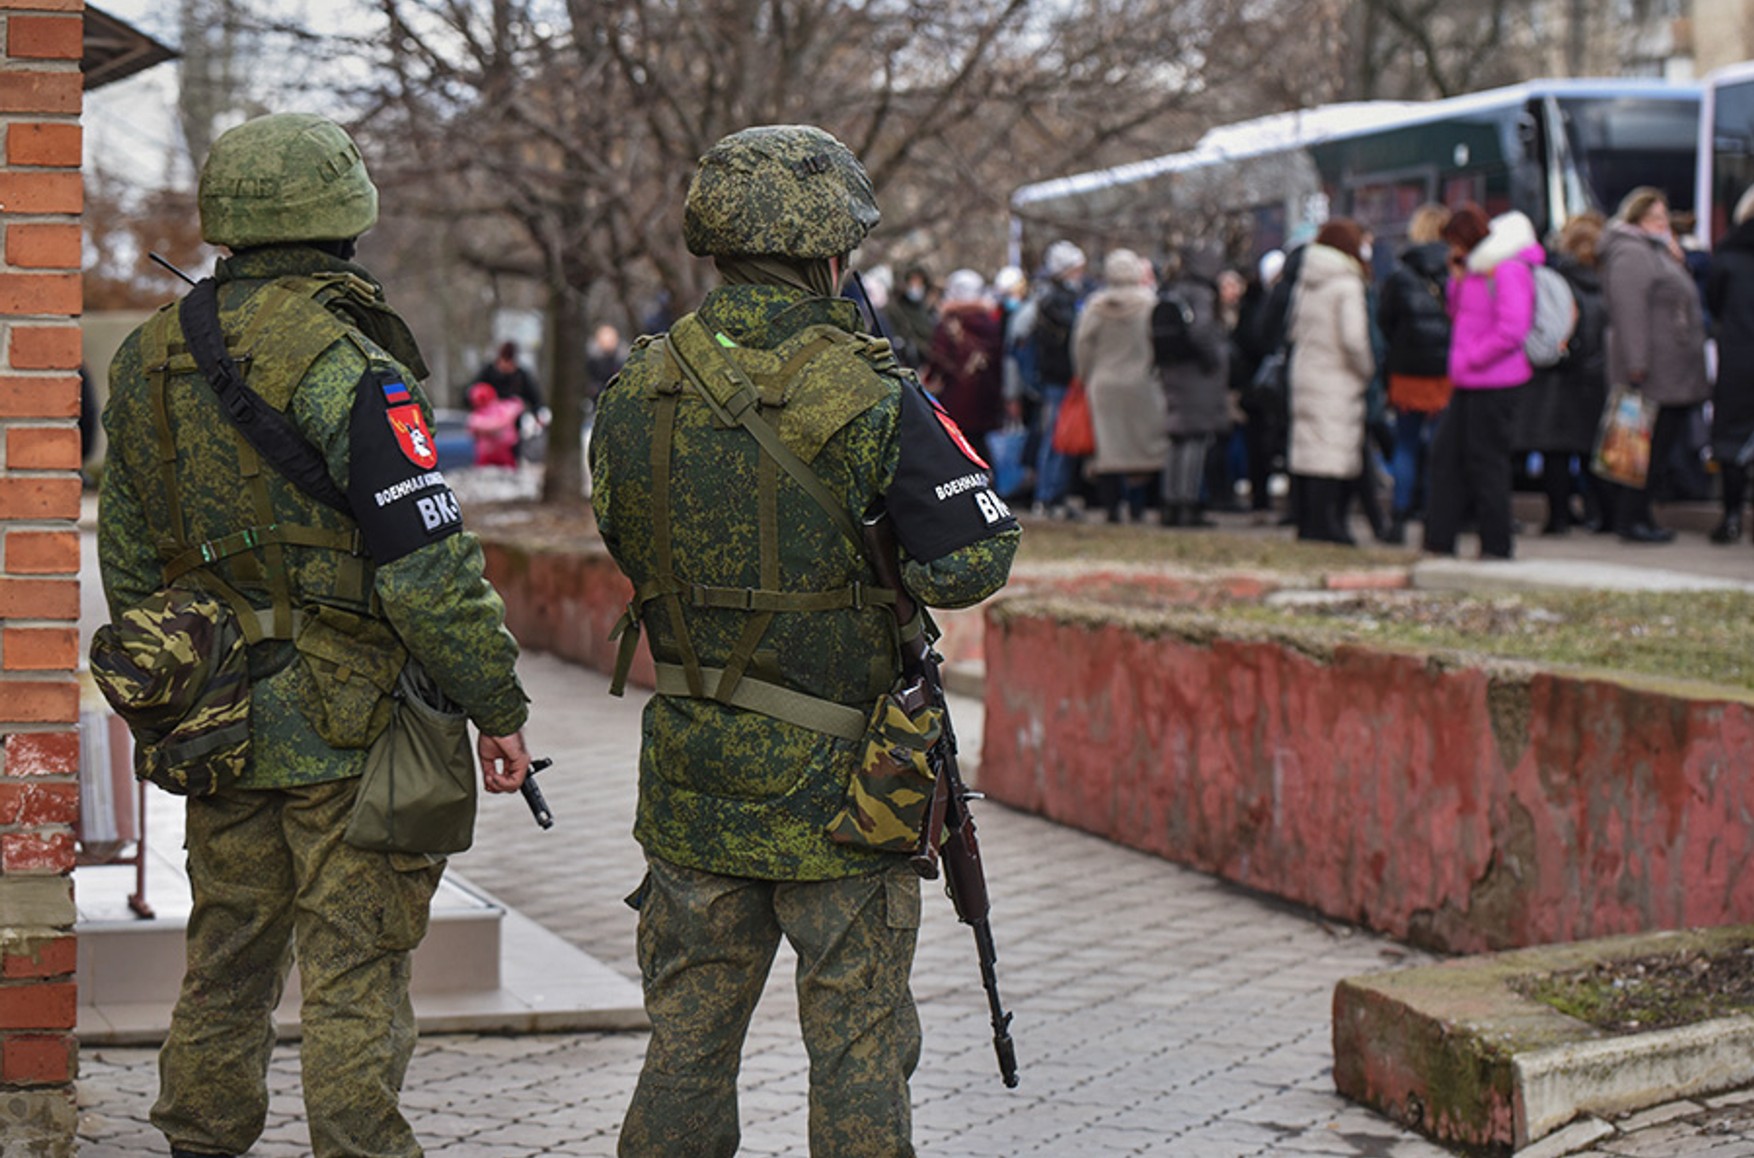 Матери незаконно мобилизованных студентов из «ЛДНР» обратились в Минобороны РФ с просьбой вернуть сыновей домой